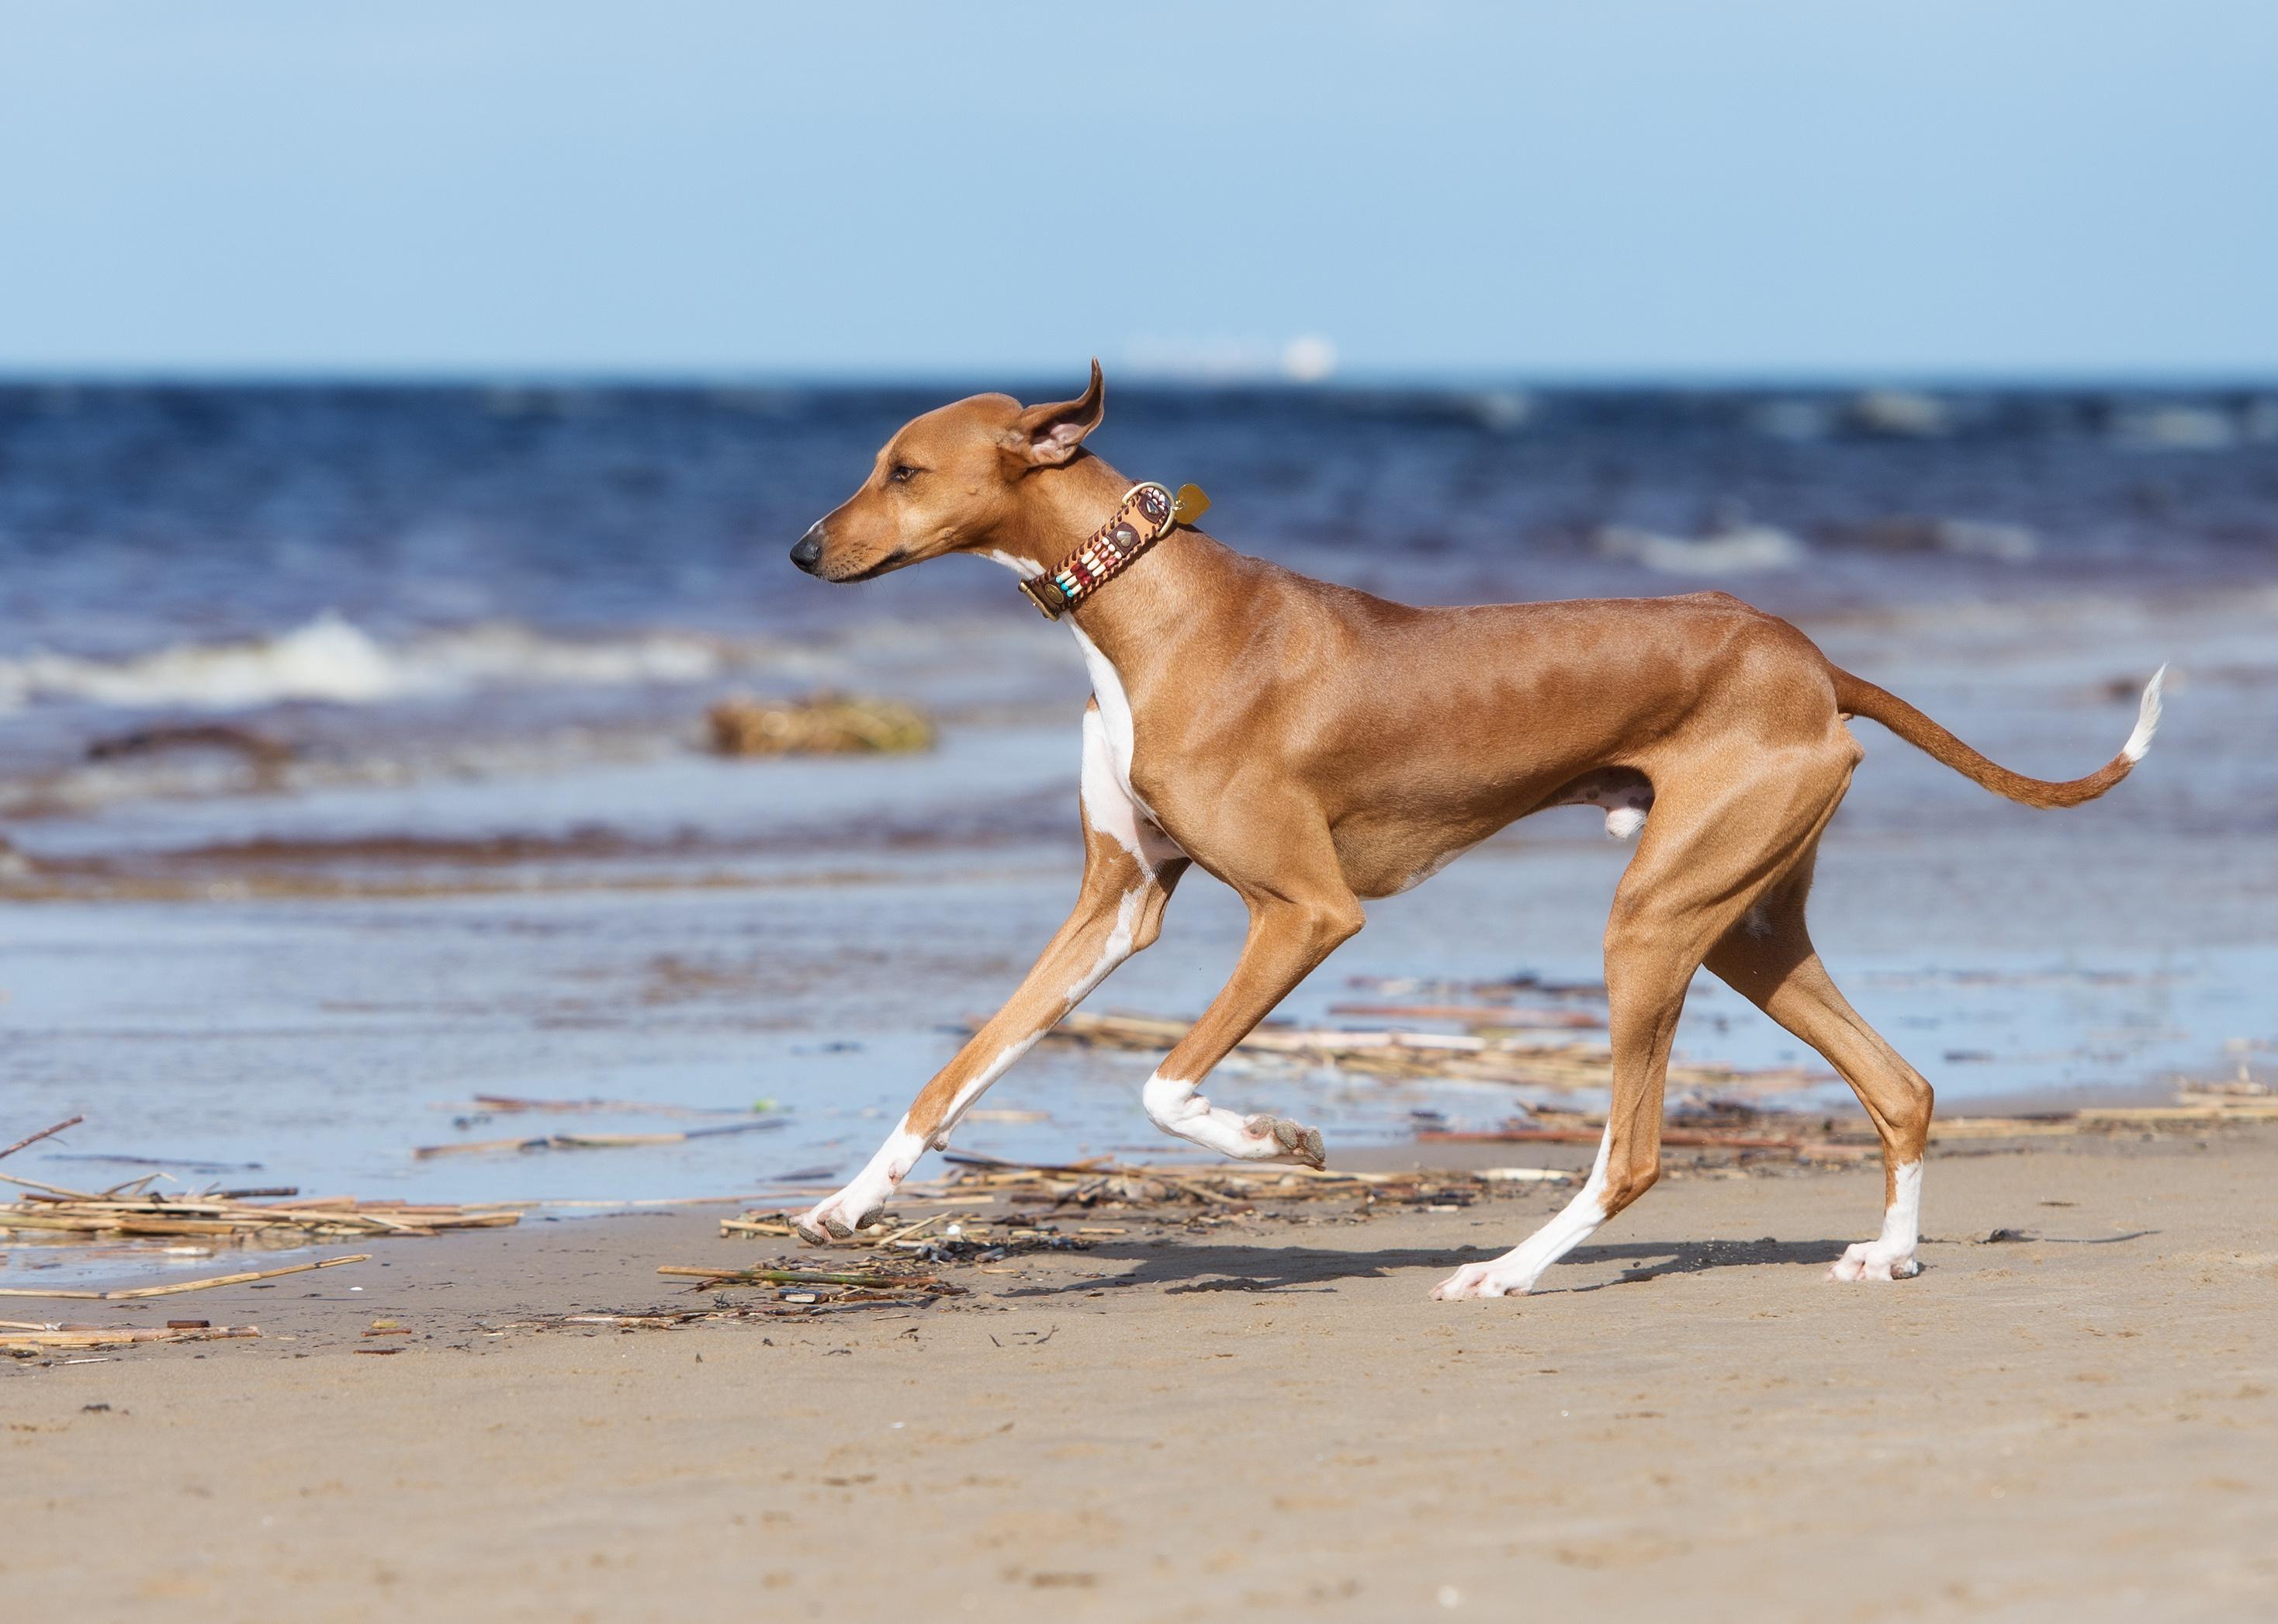 An Azawakh dog running on a beach.